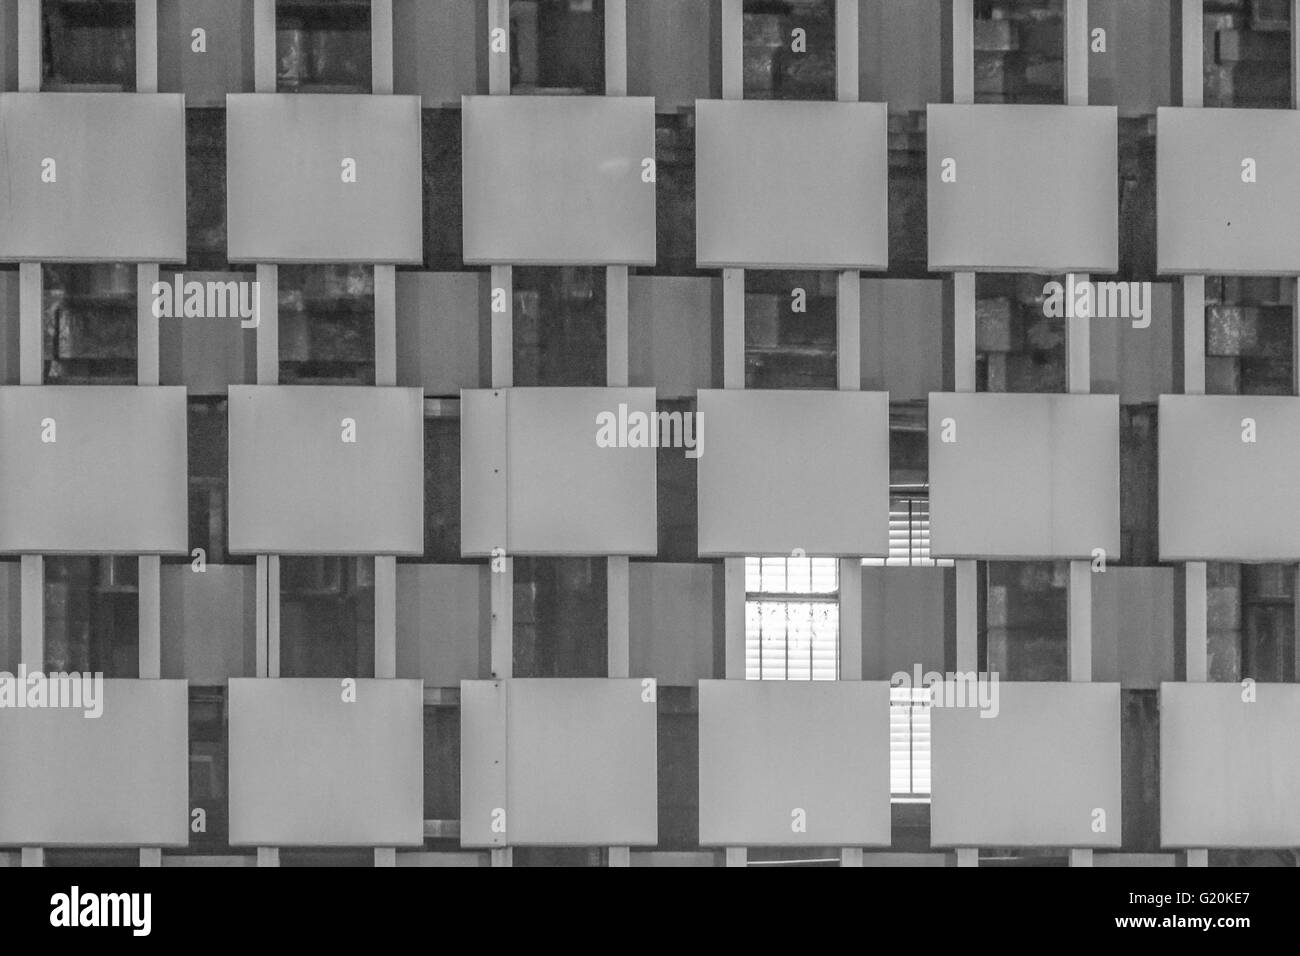 Immagine in bianco e nero della facciata di un edificio che ha un modello simile a una griglia a New Orleans, LOUISIANA Foto Stock